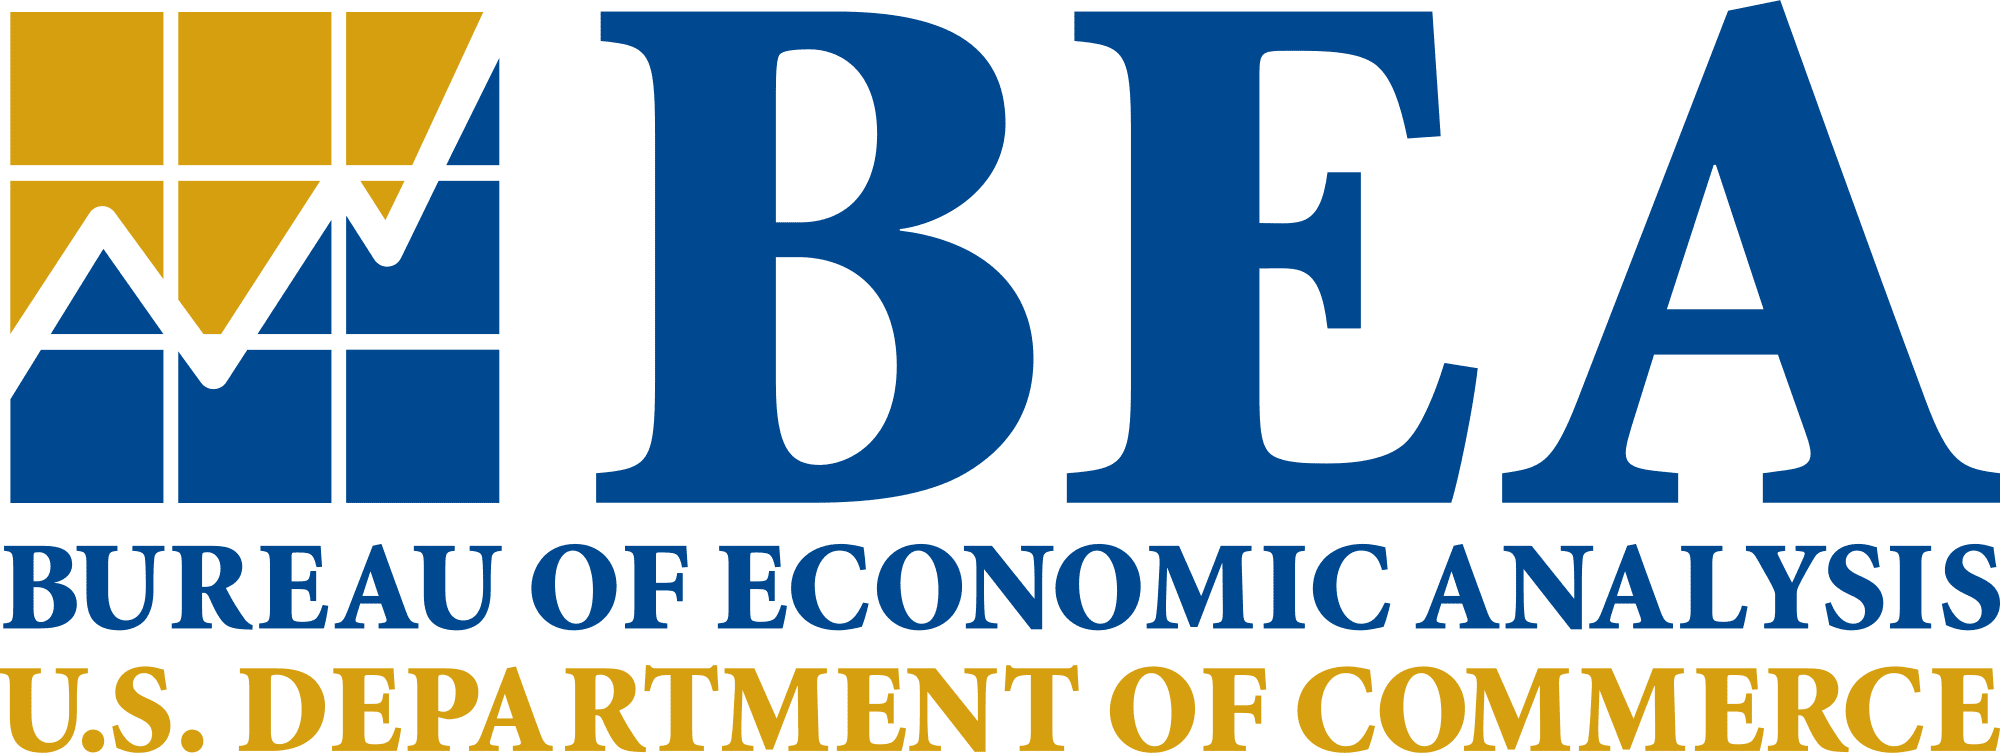 Bea Logo - BEA logo - Dcode